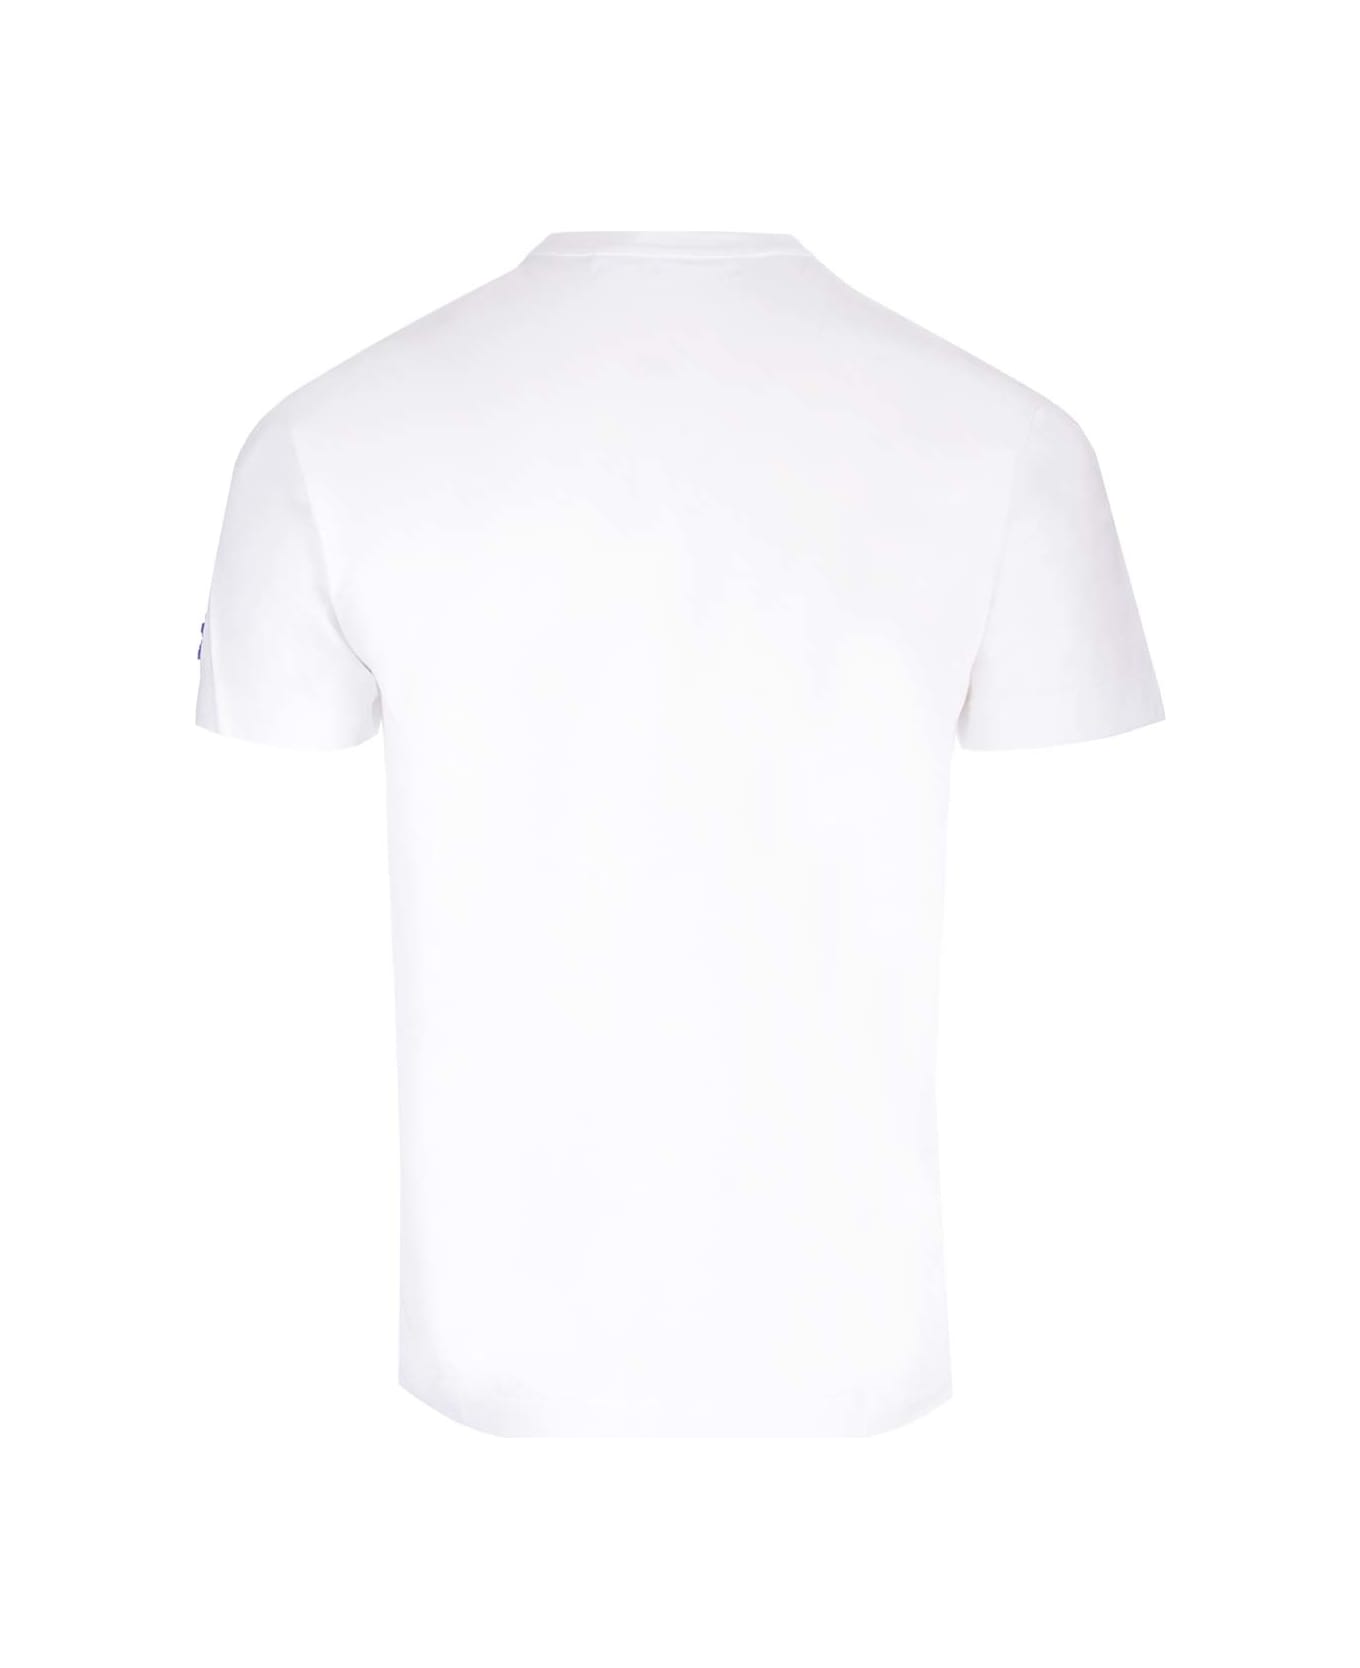 Comme des Garçons Play Jersey T-shirt - White シャツ